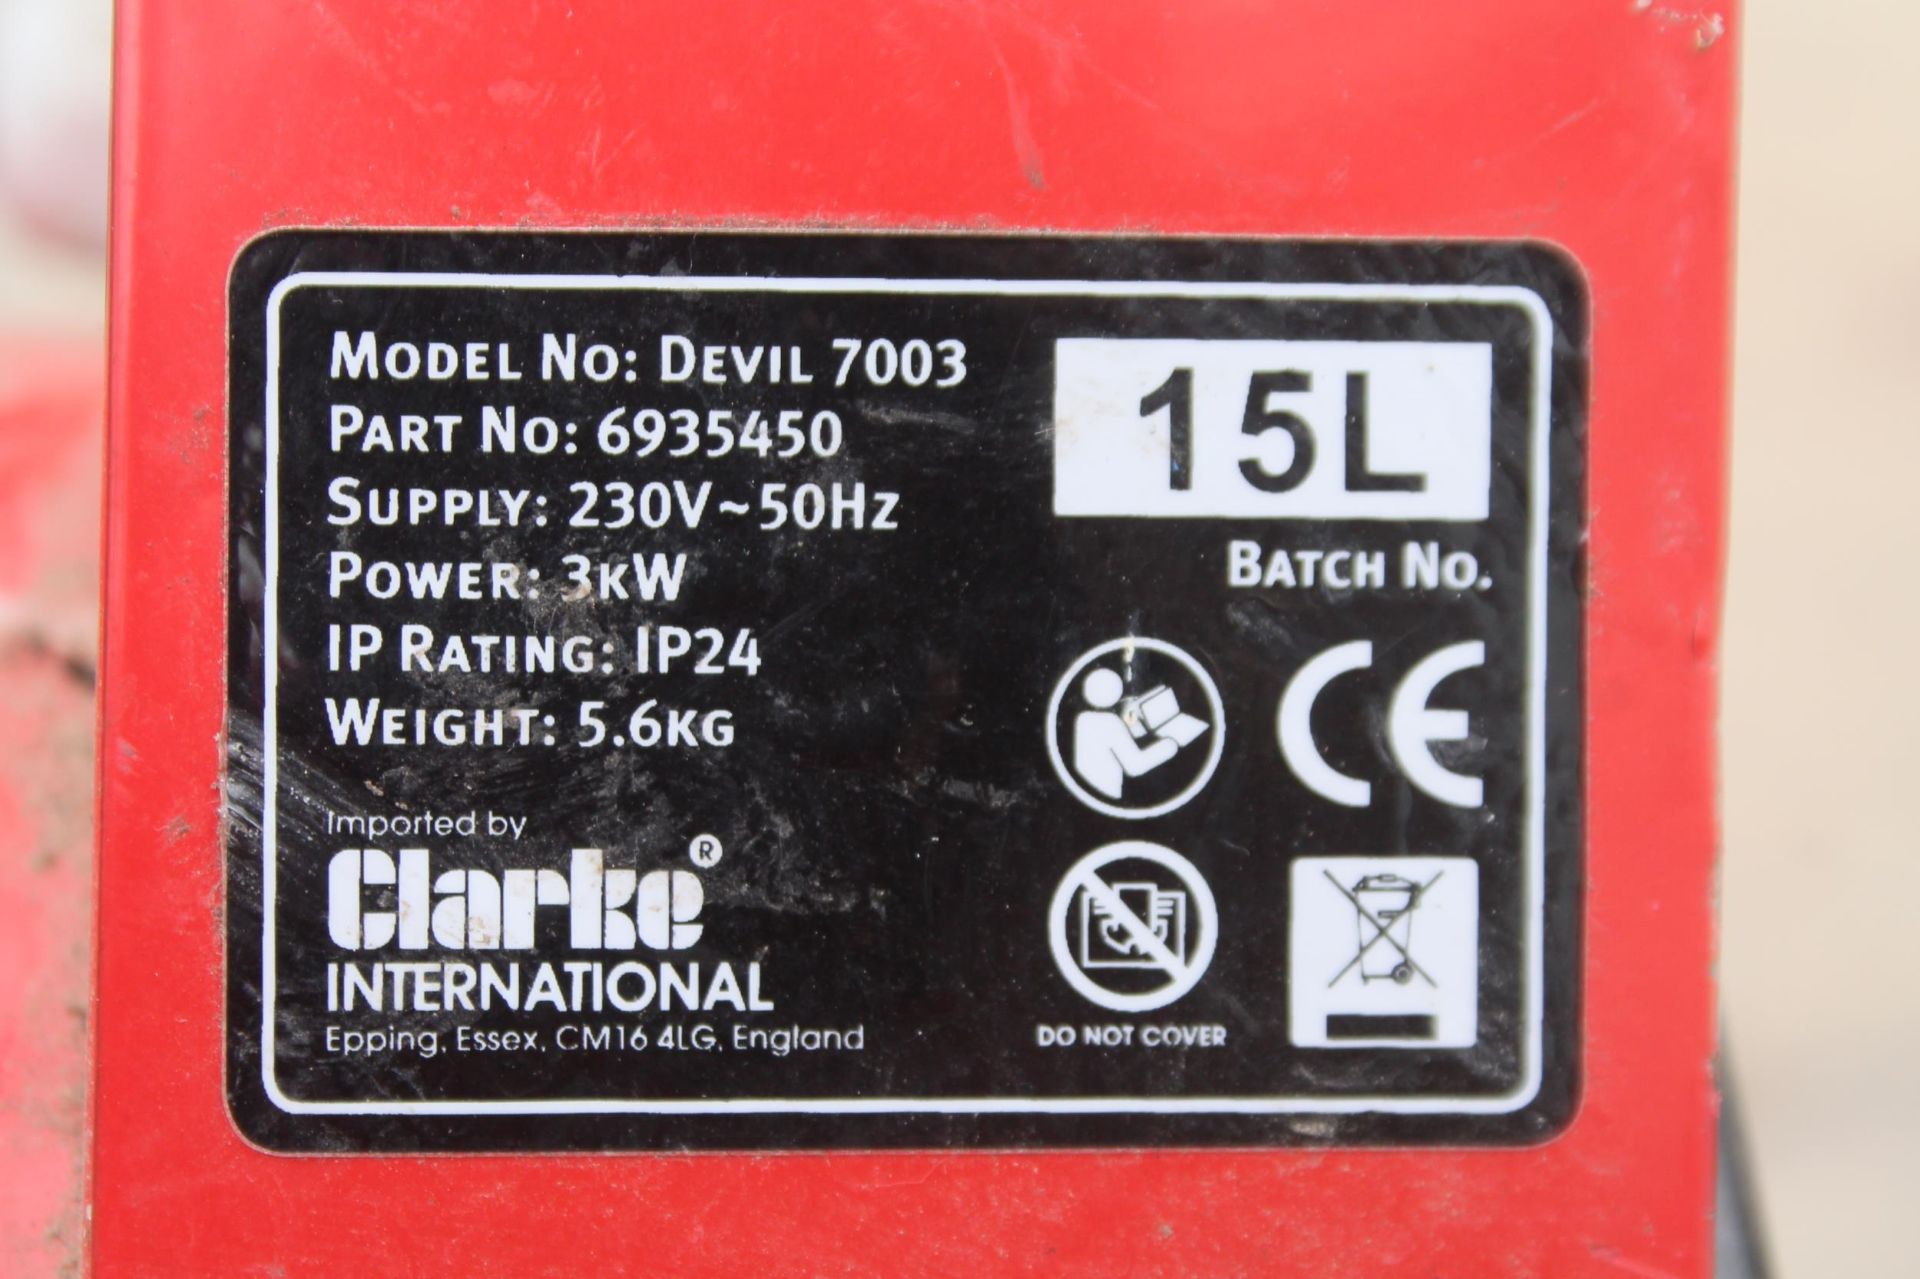 CLARKE DEVIL 7003 ELECTRIC FAN HEATER NO VAT - Image 3 of 3